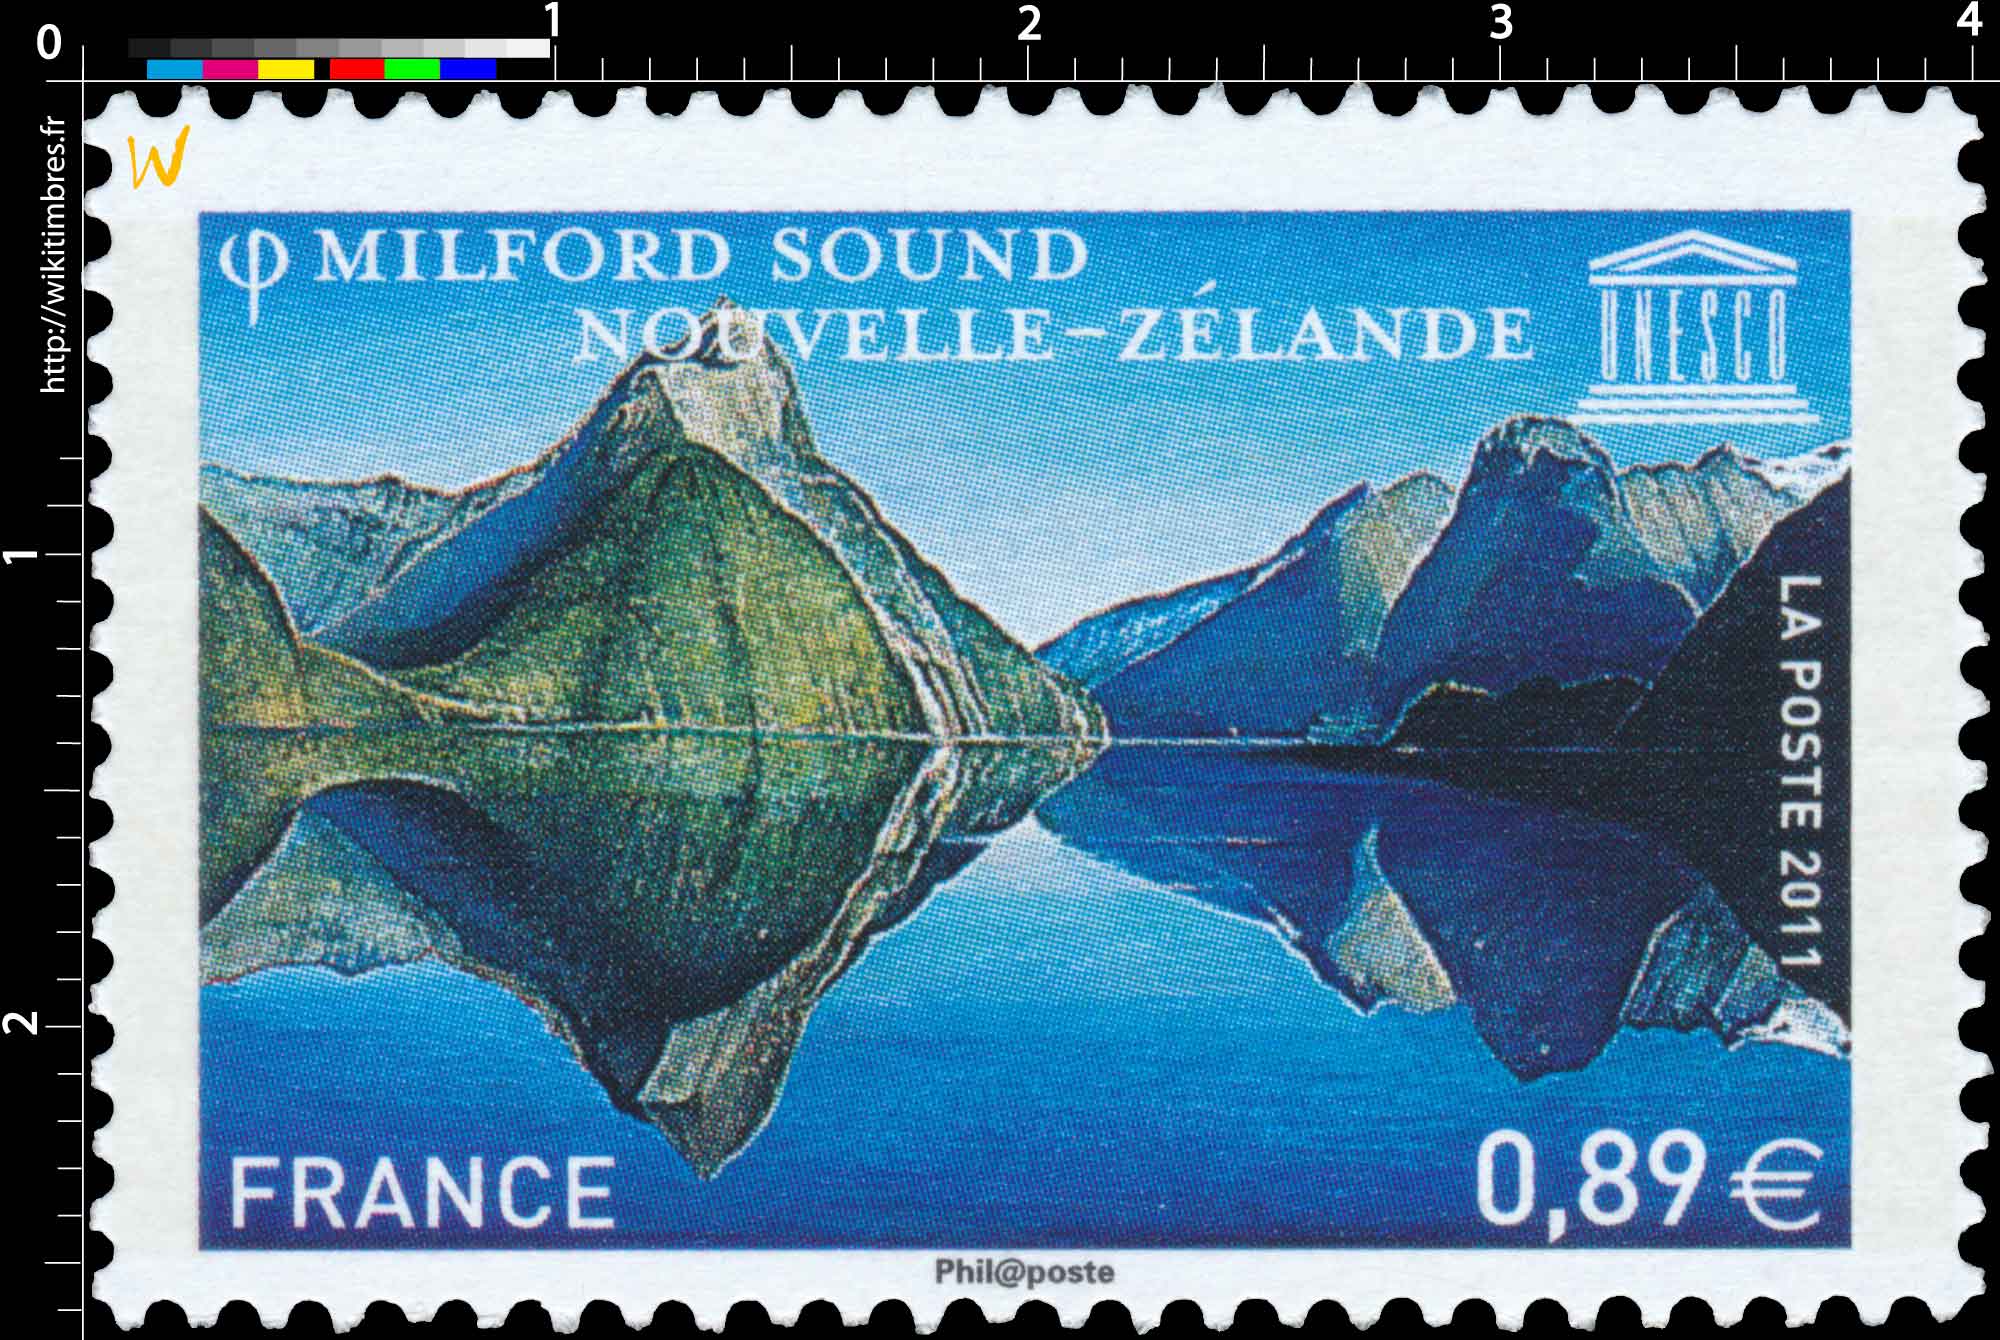 2011 UNESCO MILFORD SOUND NOUVELLE-ZÉLANDE